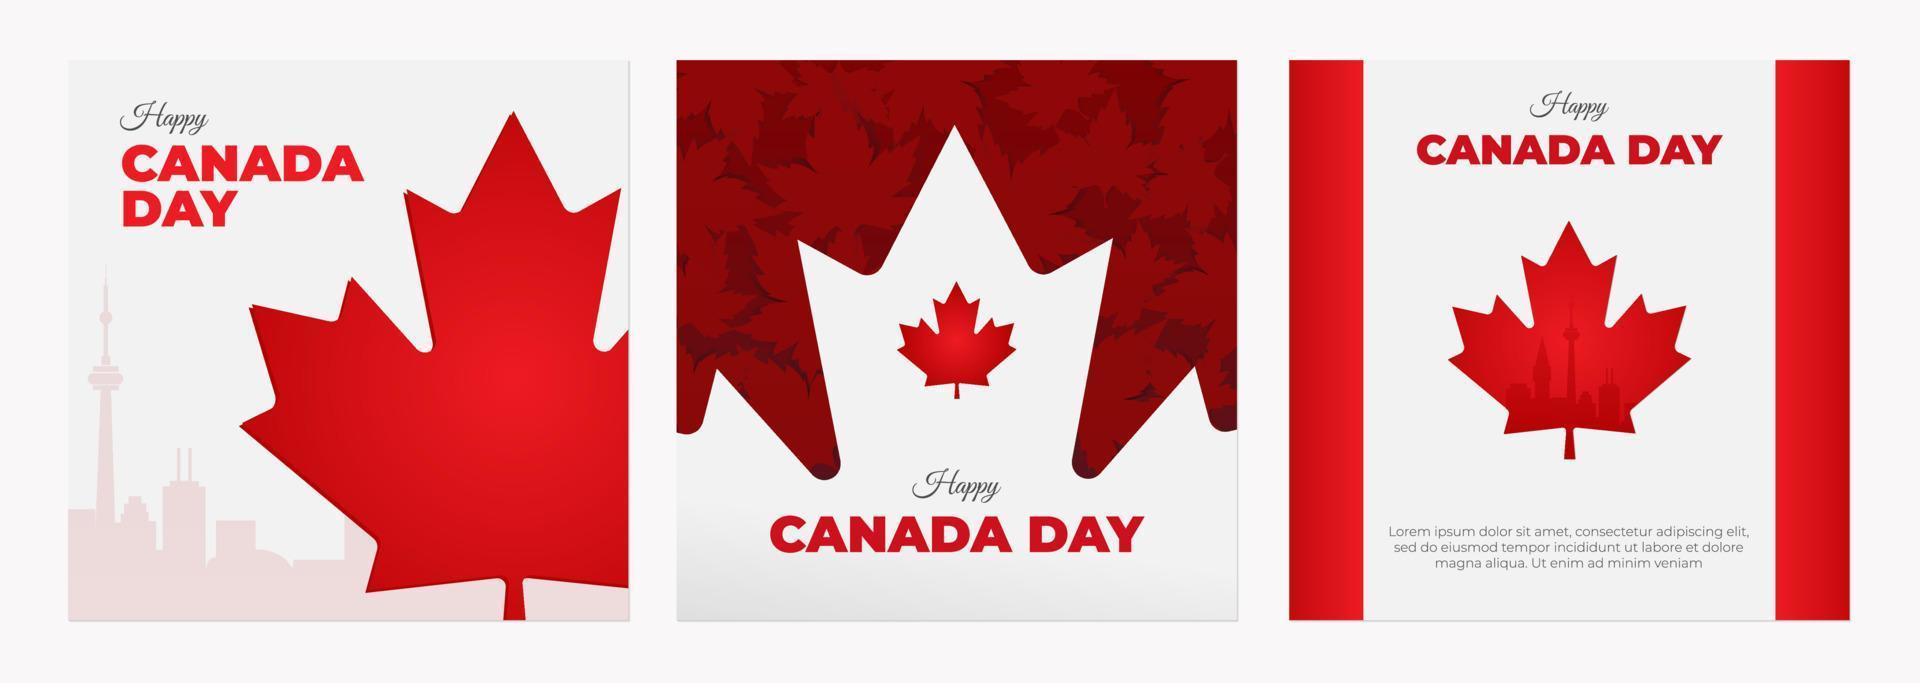 kanadischer unabhängigkeitstag. glückliche kanada-tagesvektorillustration mit ahornblattsymbol vektor